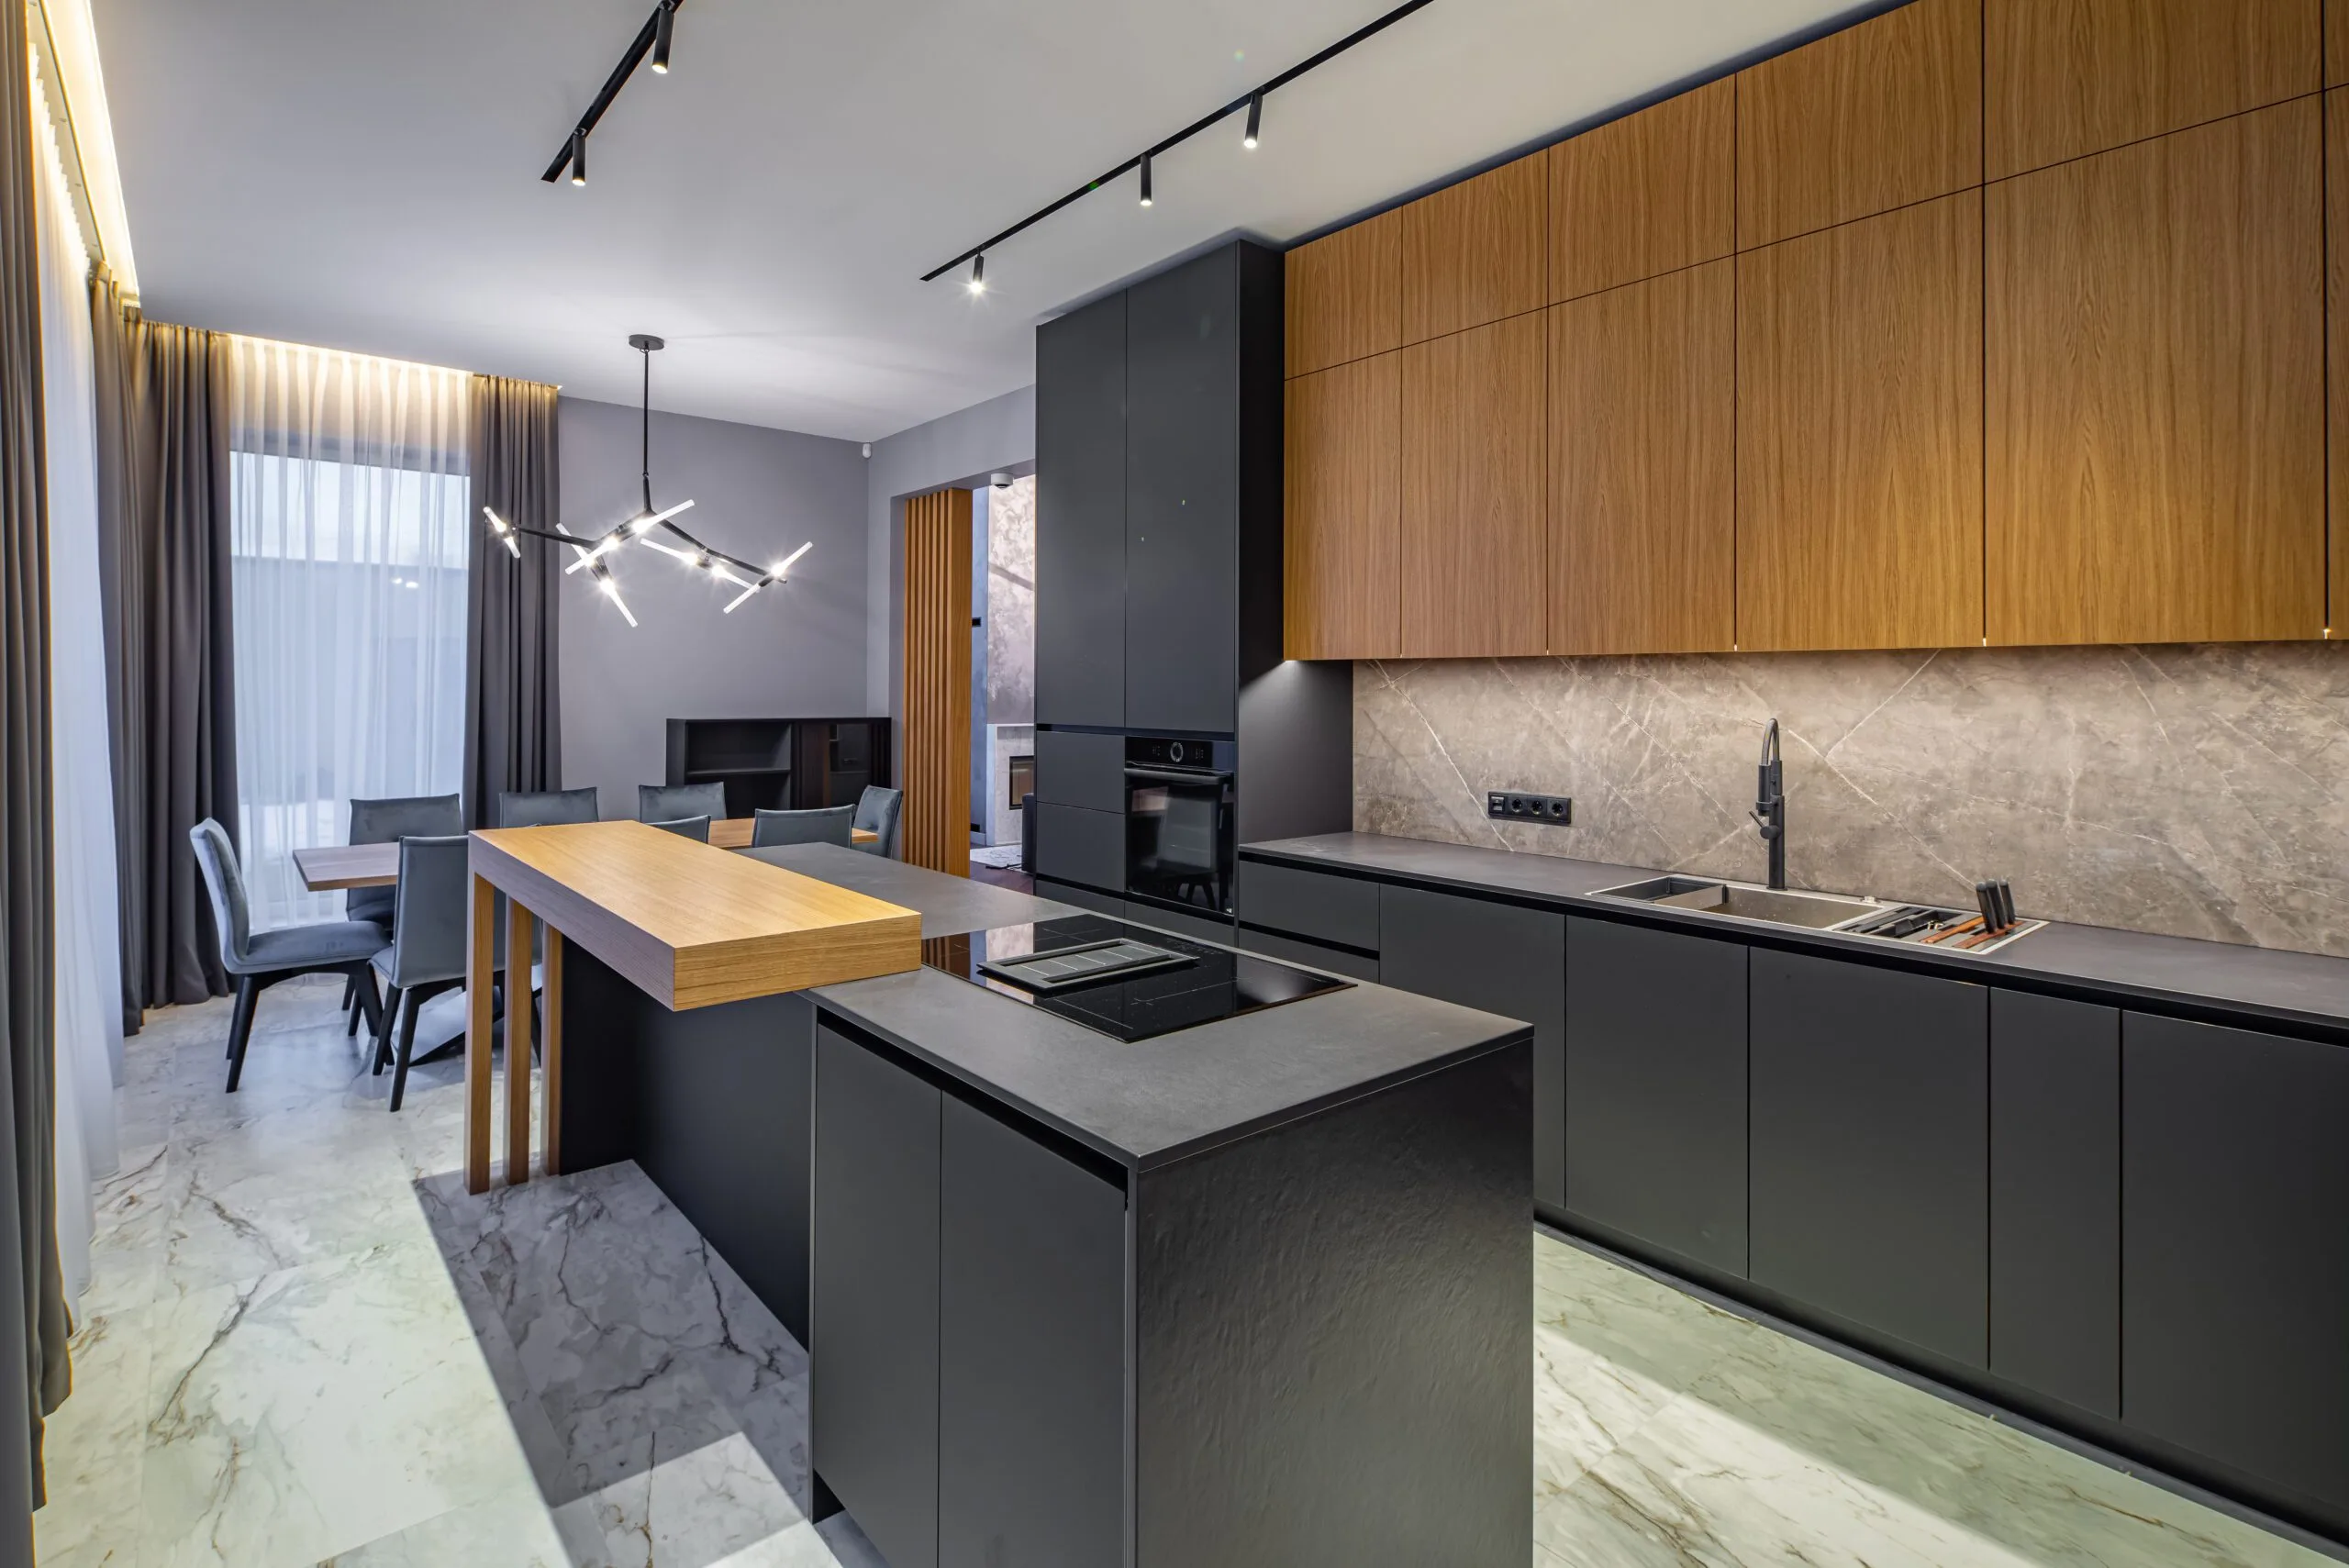 Modern Kitchen remodel Interior - Black